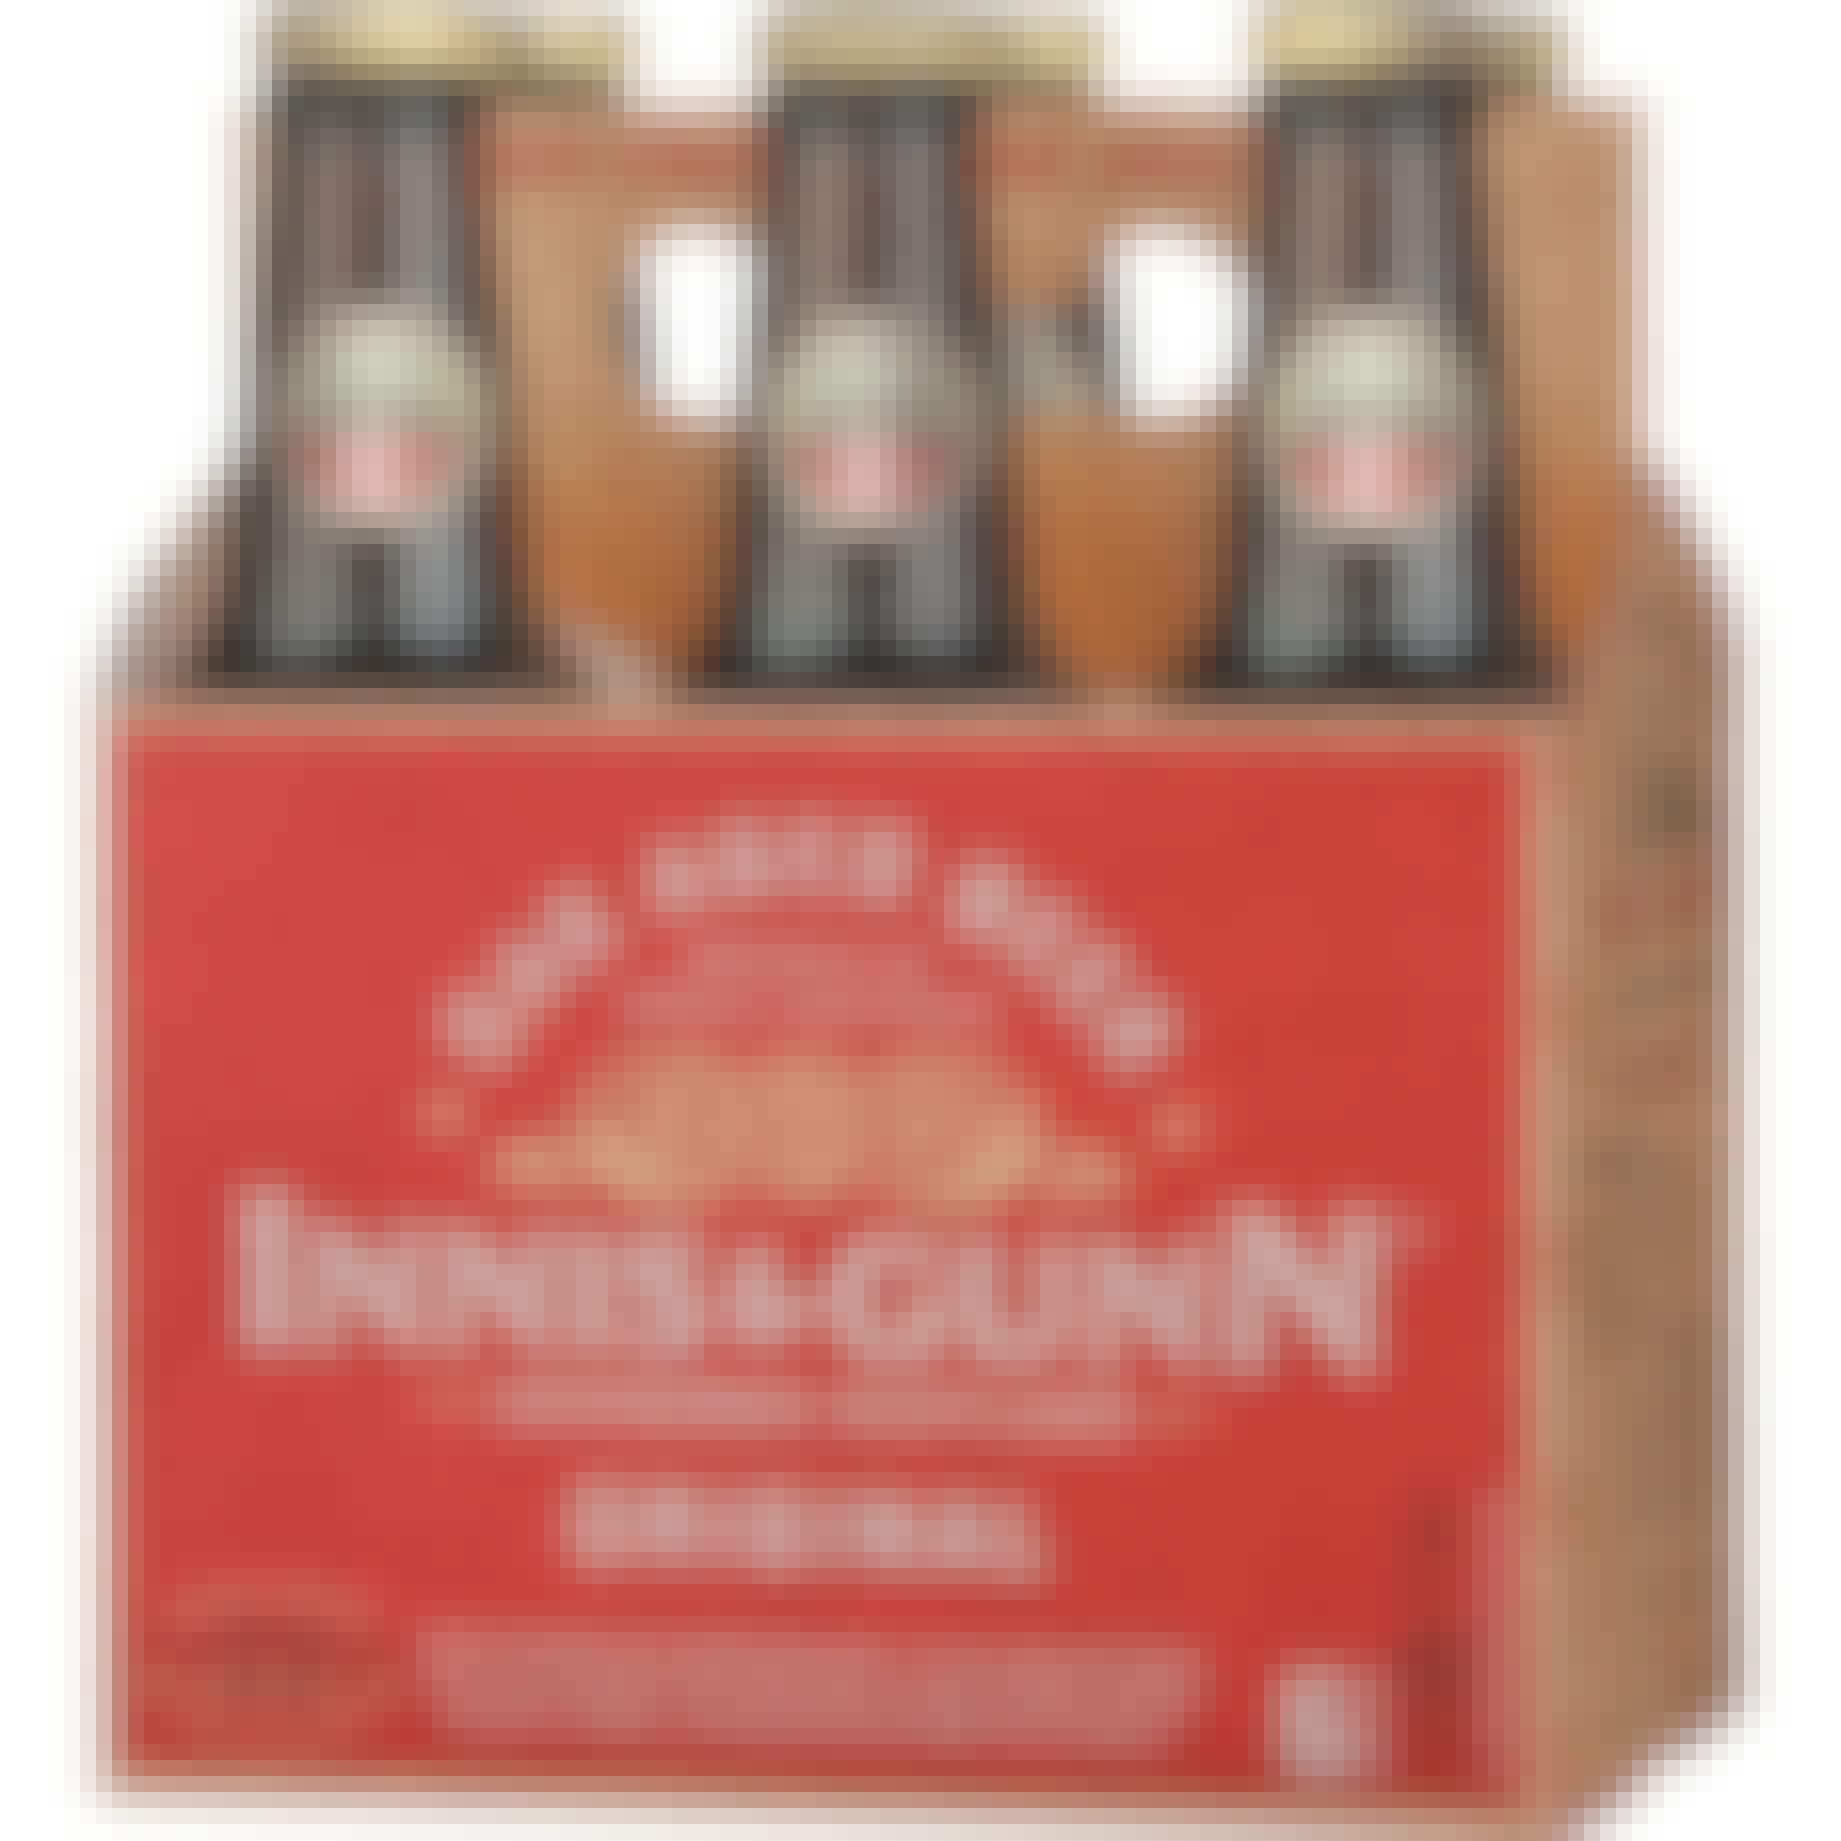 Innis & Gunn Original Oak Aged Beer 6 pack 12 oz. Bottle